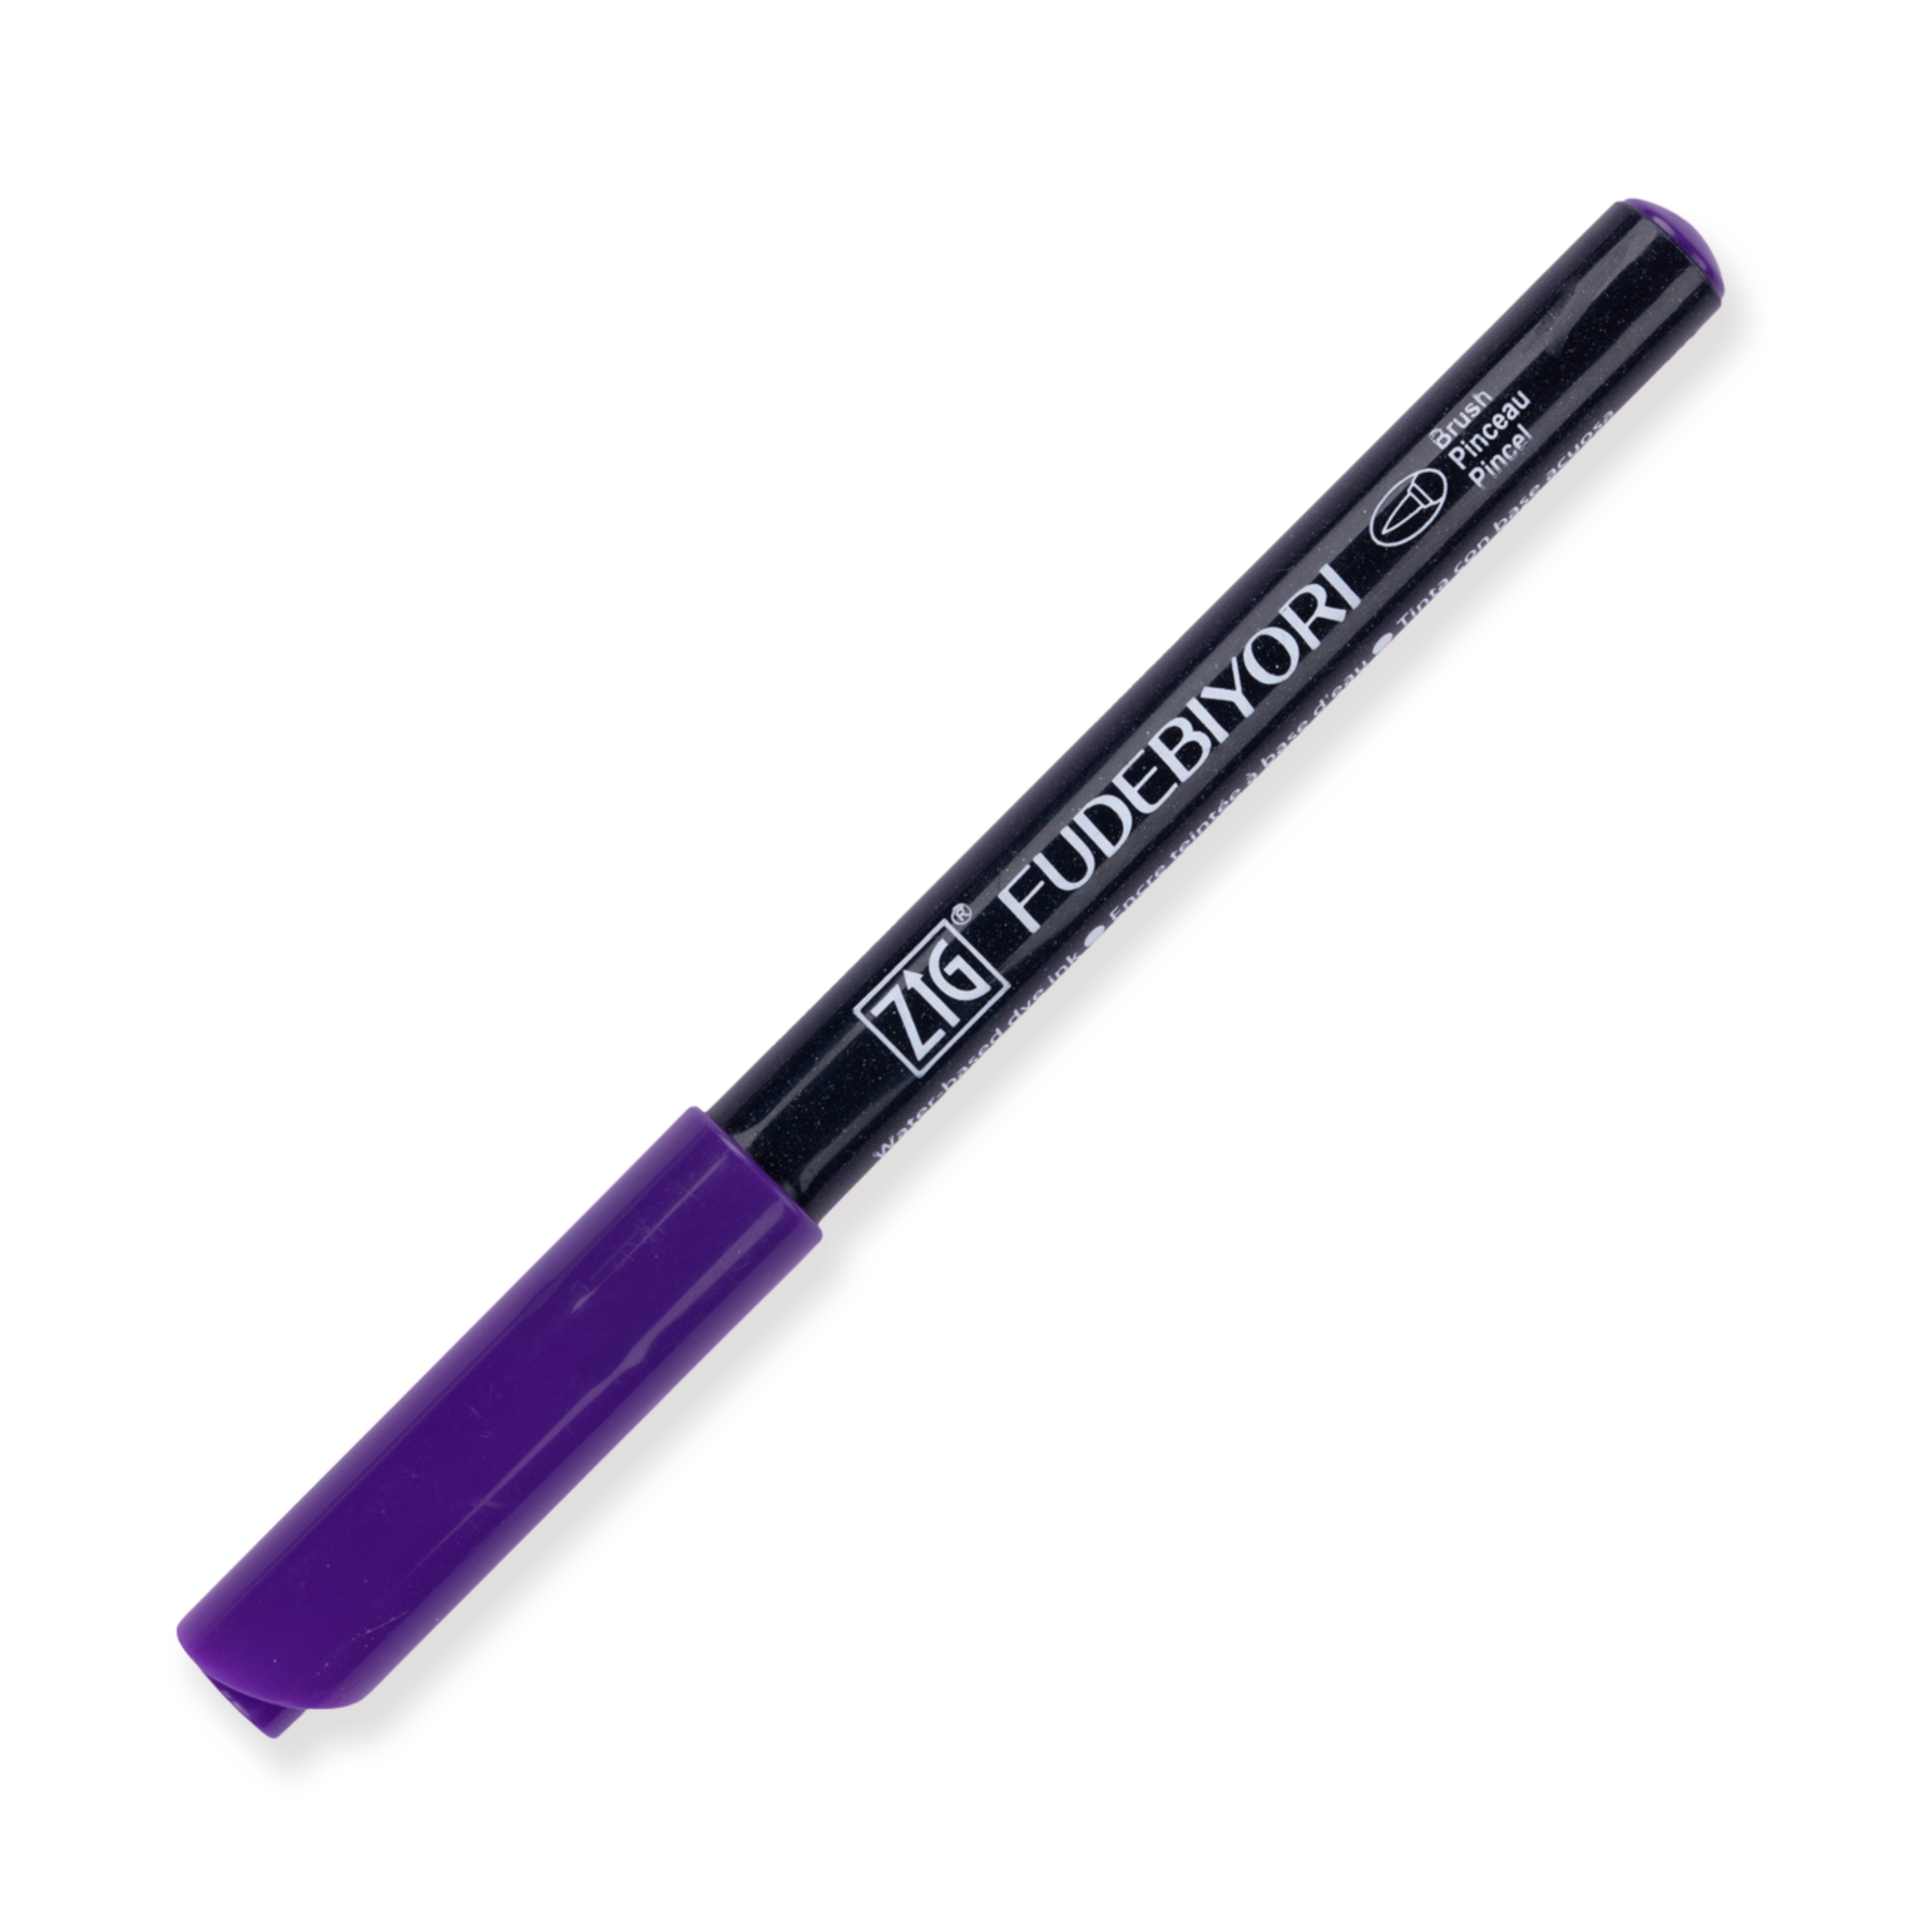 Kuretake Zig Fudebiyori Brush Pen - Violeta intenso 084